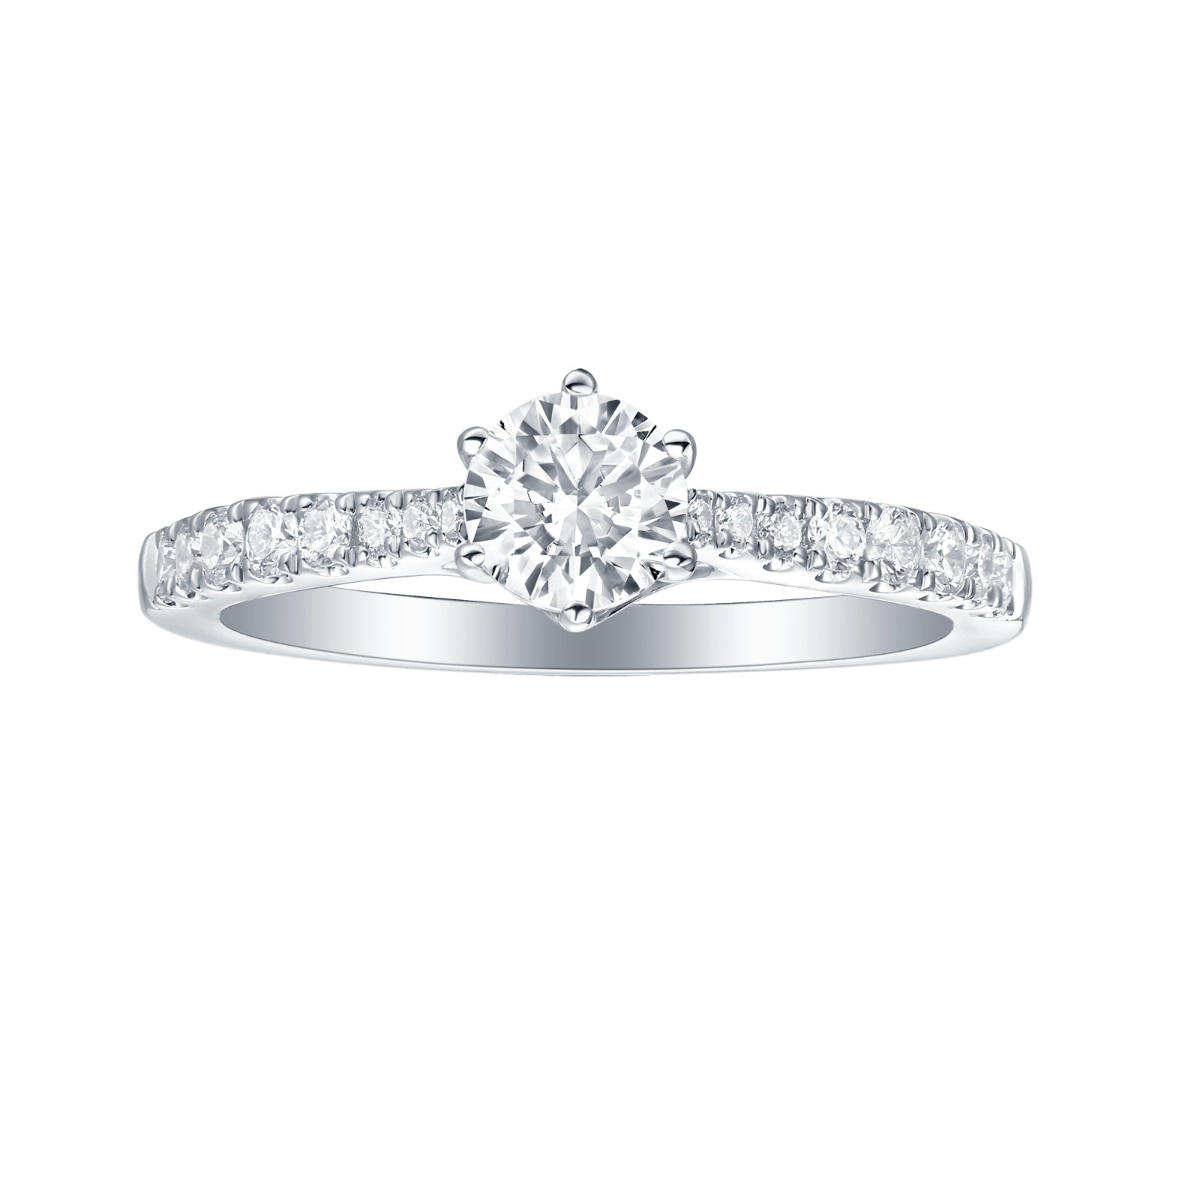 R35876WHT – 18K White Gold Diamond Ring, 1.25 TCW